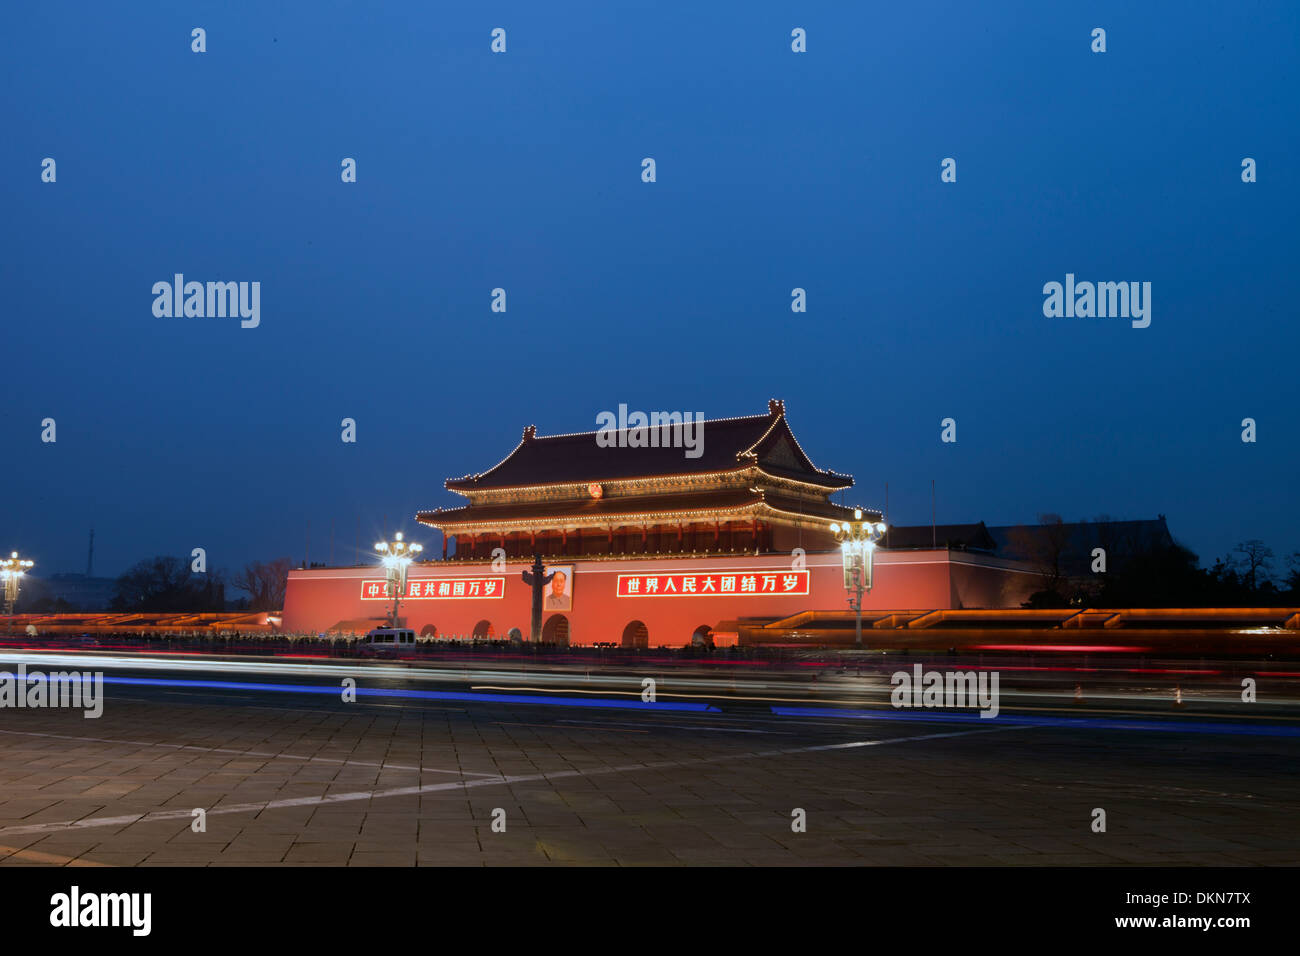 Vue nocturne de la Place Tiananmen Banque D'Images